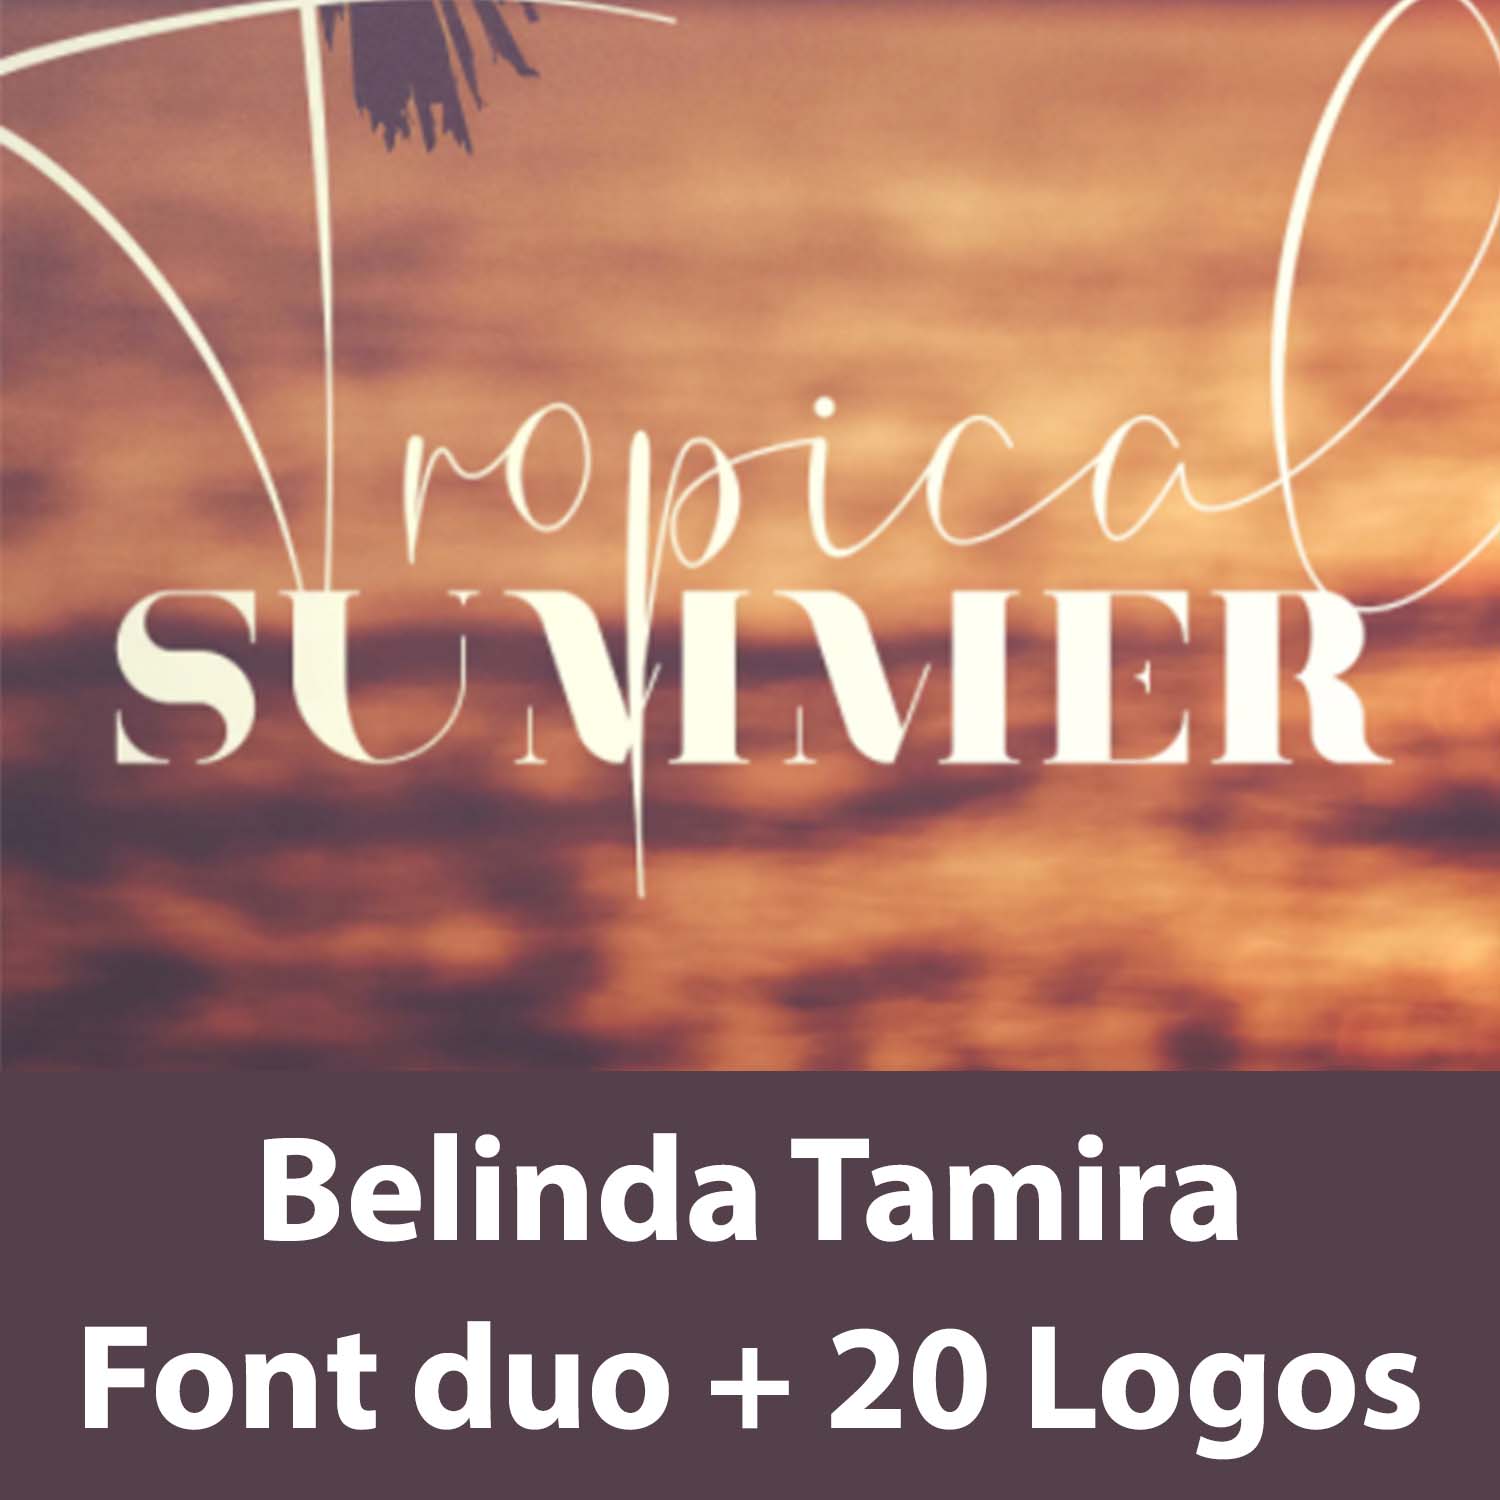 Belinda Tamira - Font duo + 20 Logos cover image.